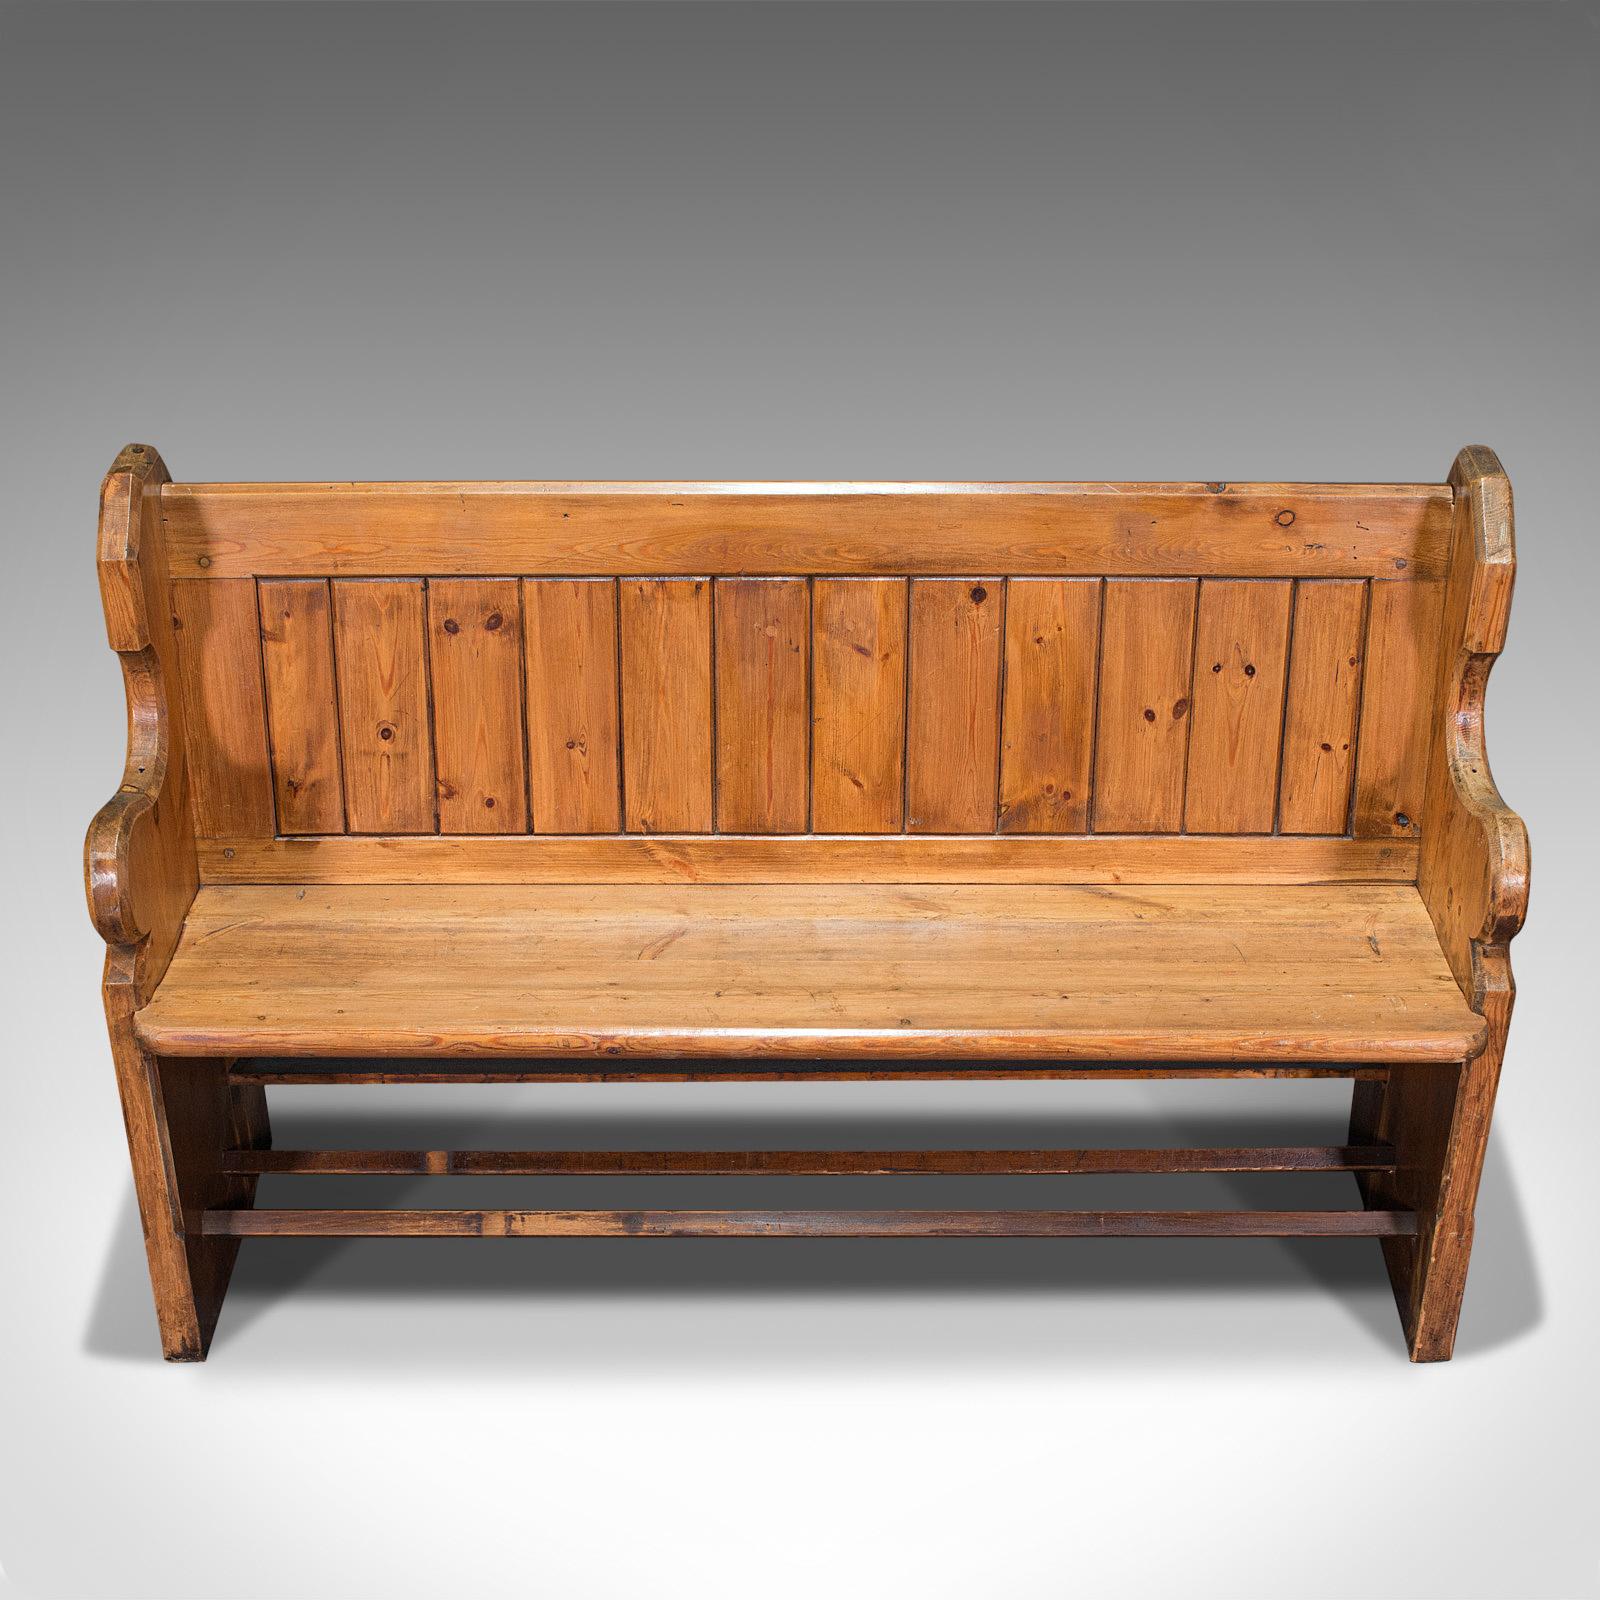 19th Century Antique Bench Seat, English, Pine, Pew, Ecclesiastic Taste, Victorian, C.1900